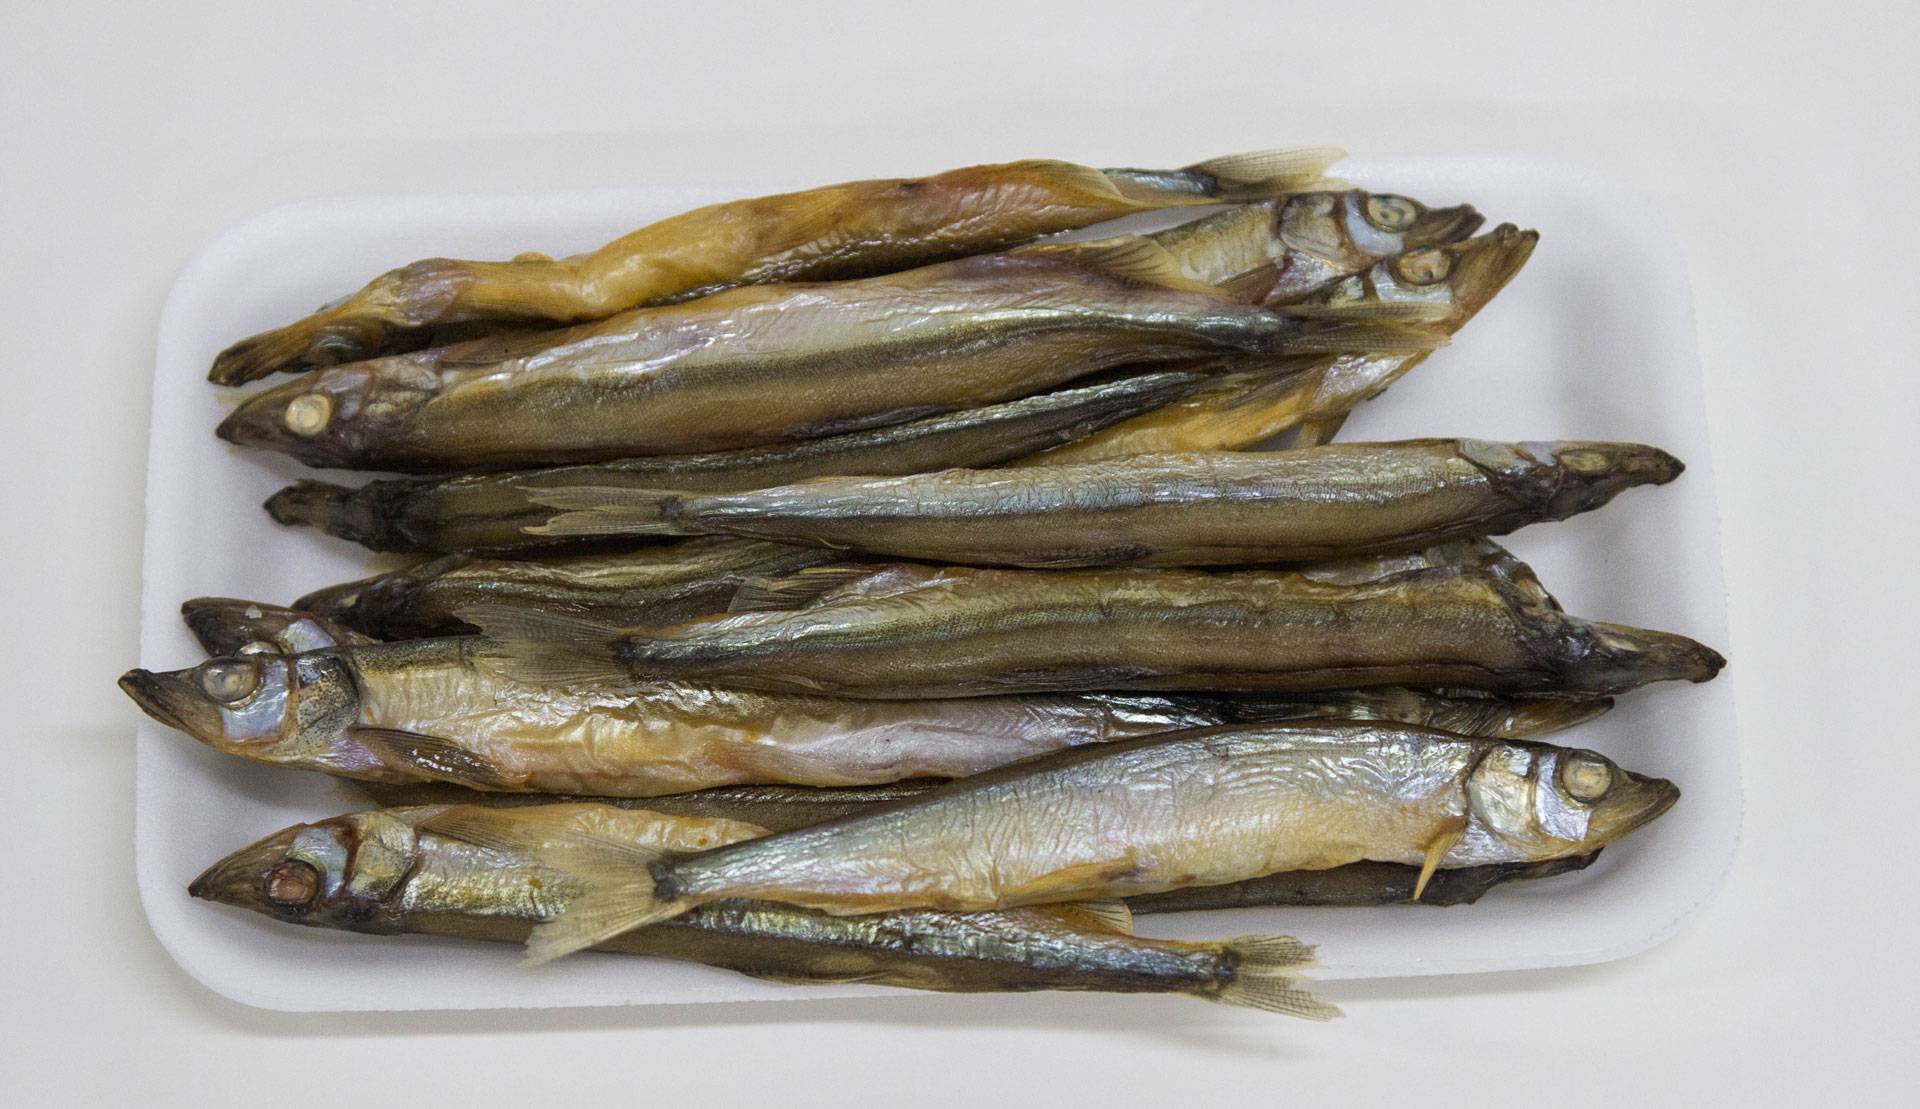 Рыба мойва: 5 интересных фактов и рецепт одного блюда